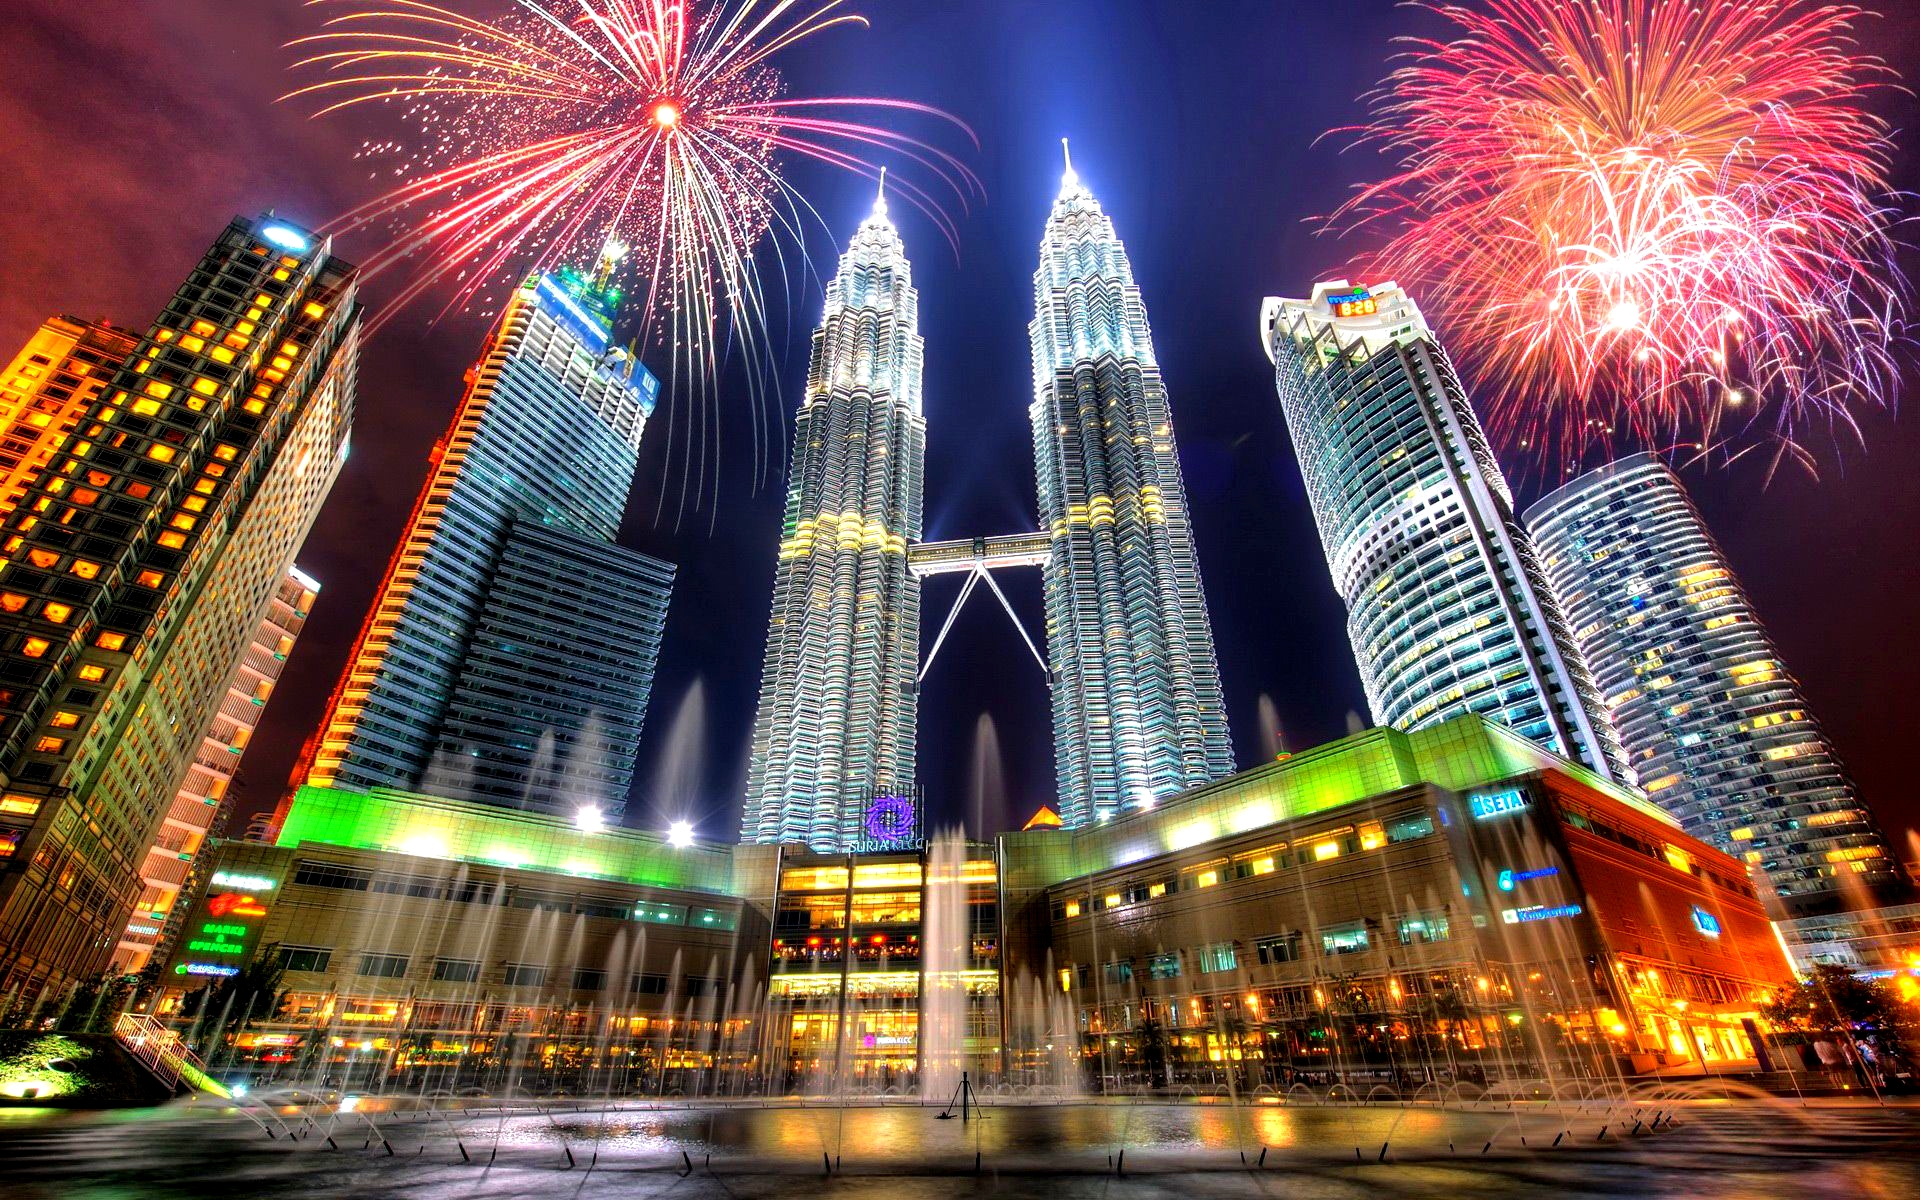 تور مالزی با پرواز مستقیم و اقامت 7 روزه در بهترین هتل های کشور مالزی